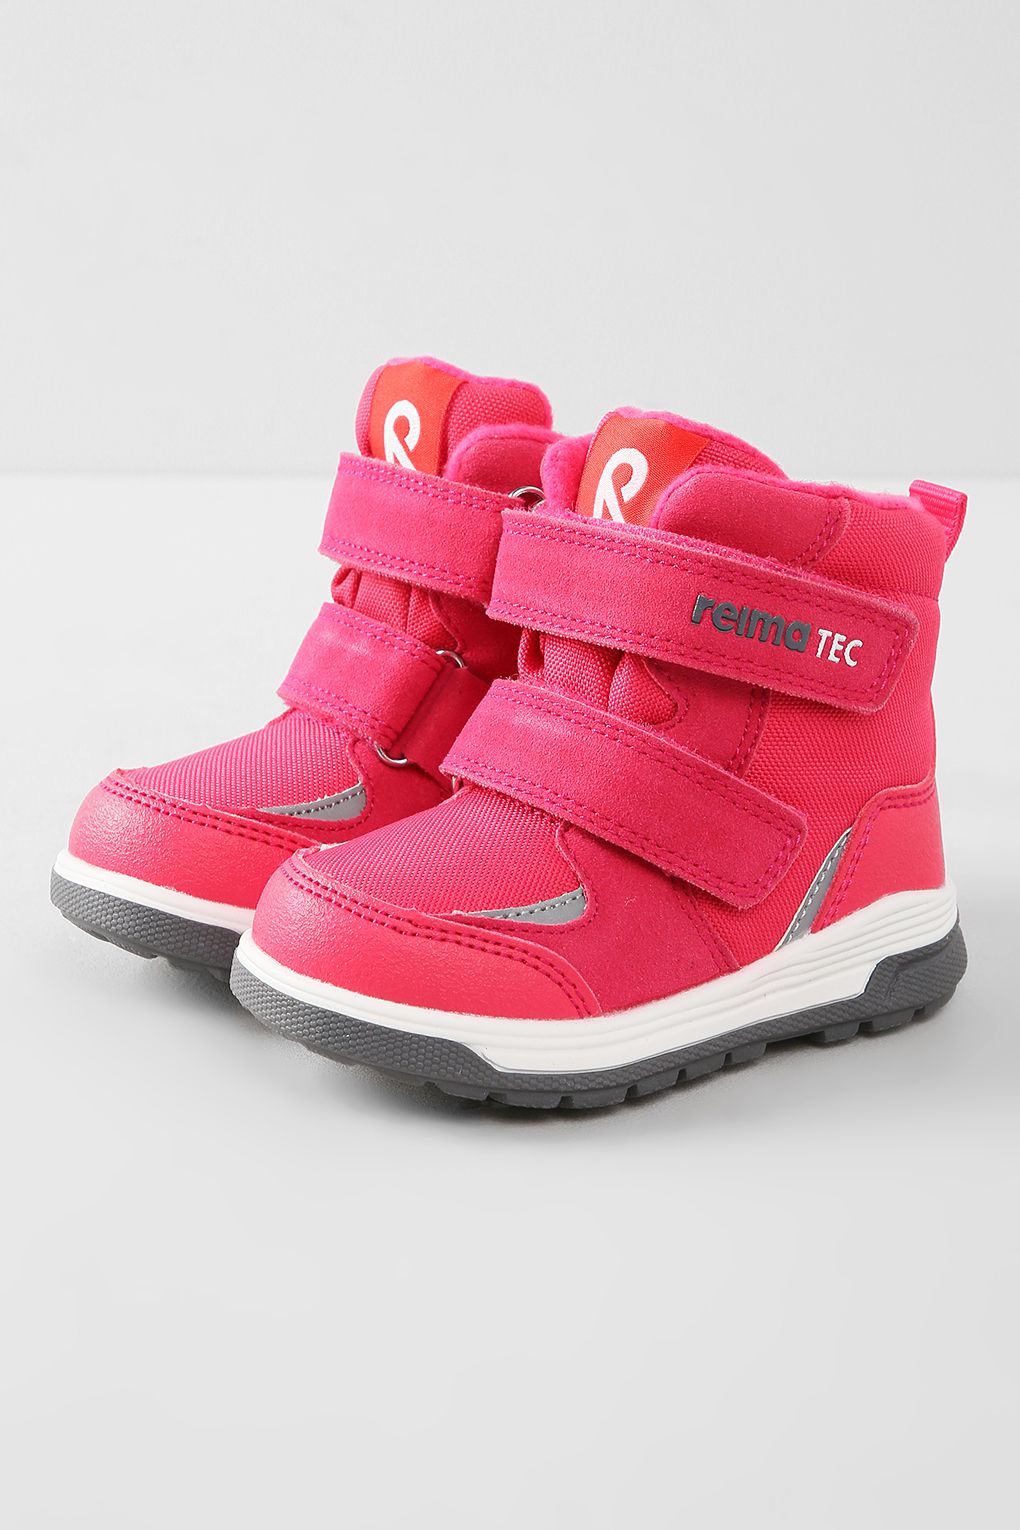 Ботинки Reima 569435R, розовый, 24